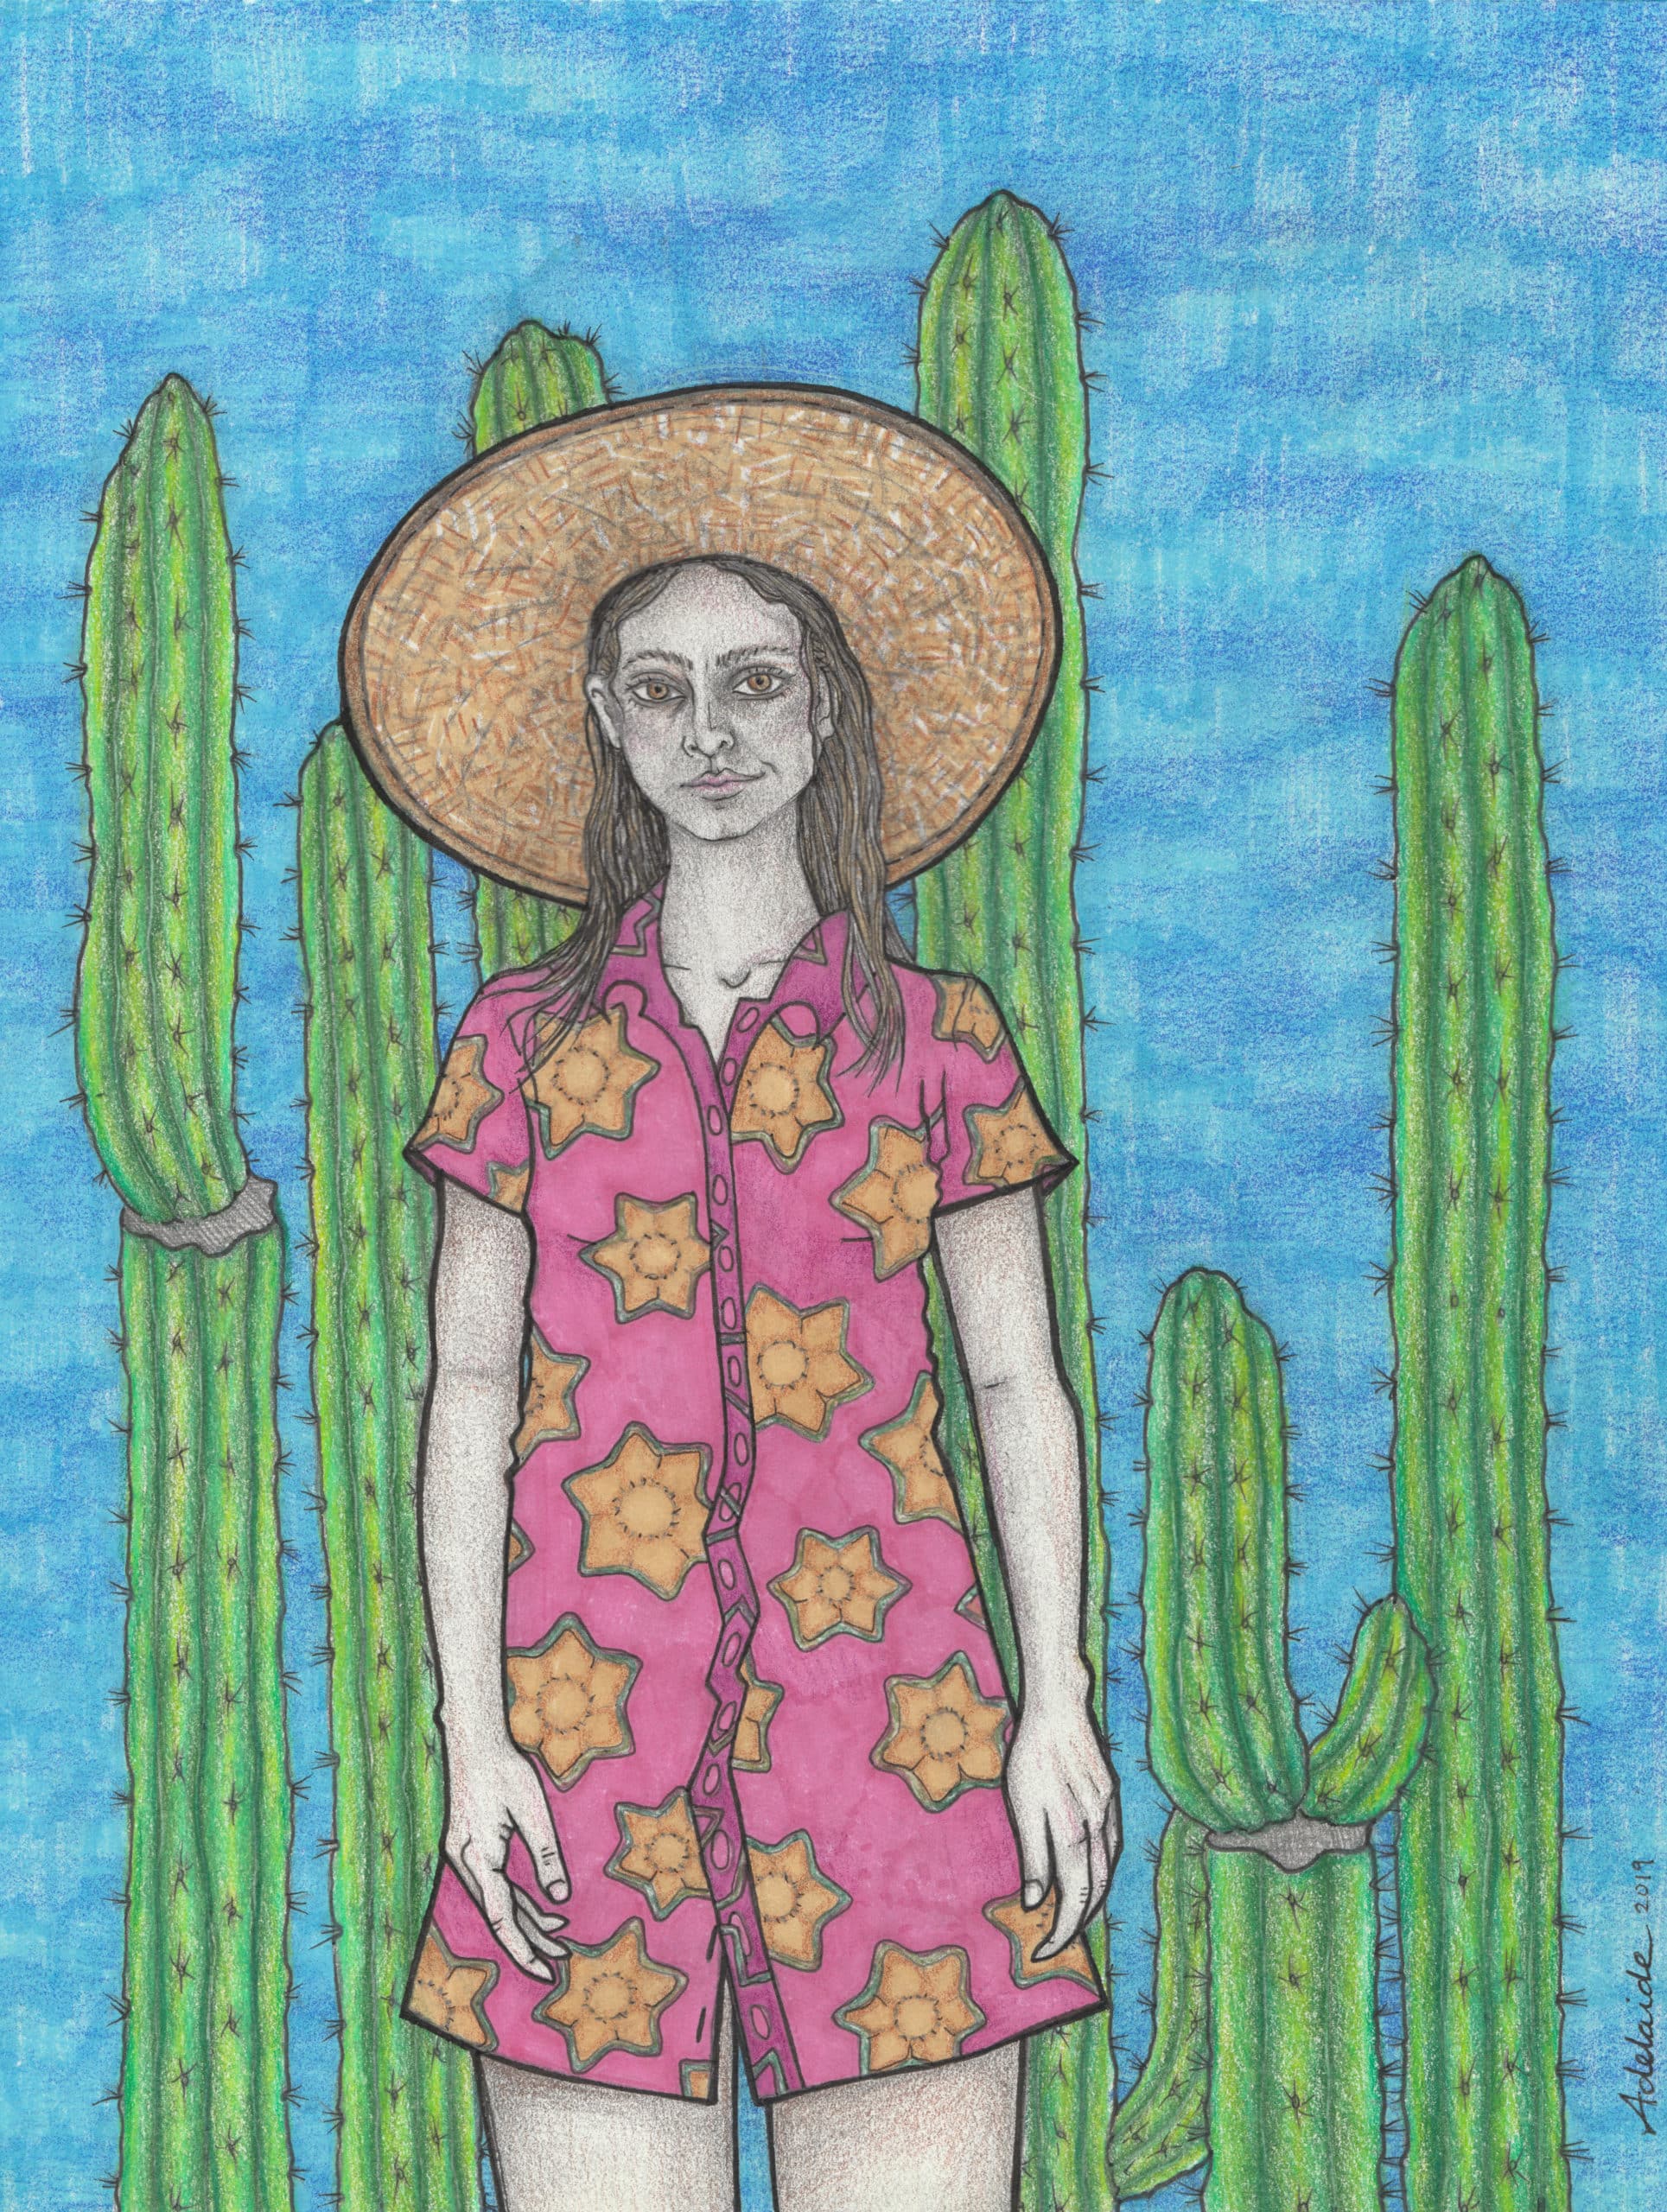 San Pedro sketch with color